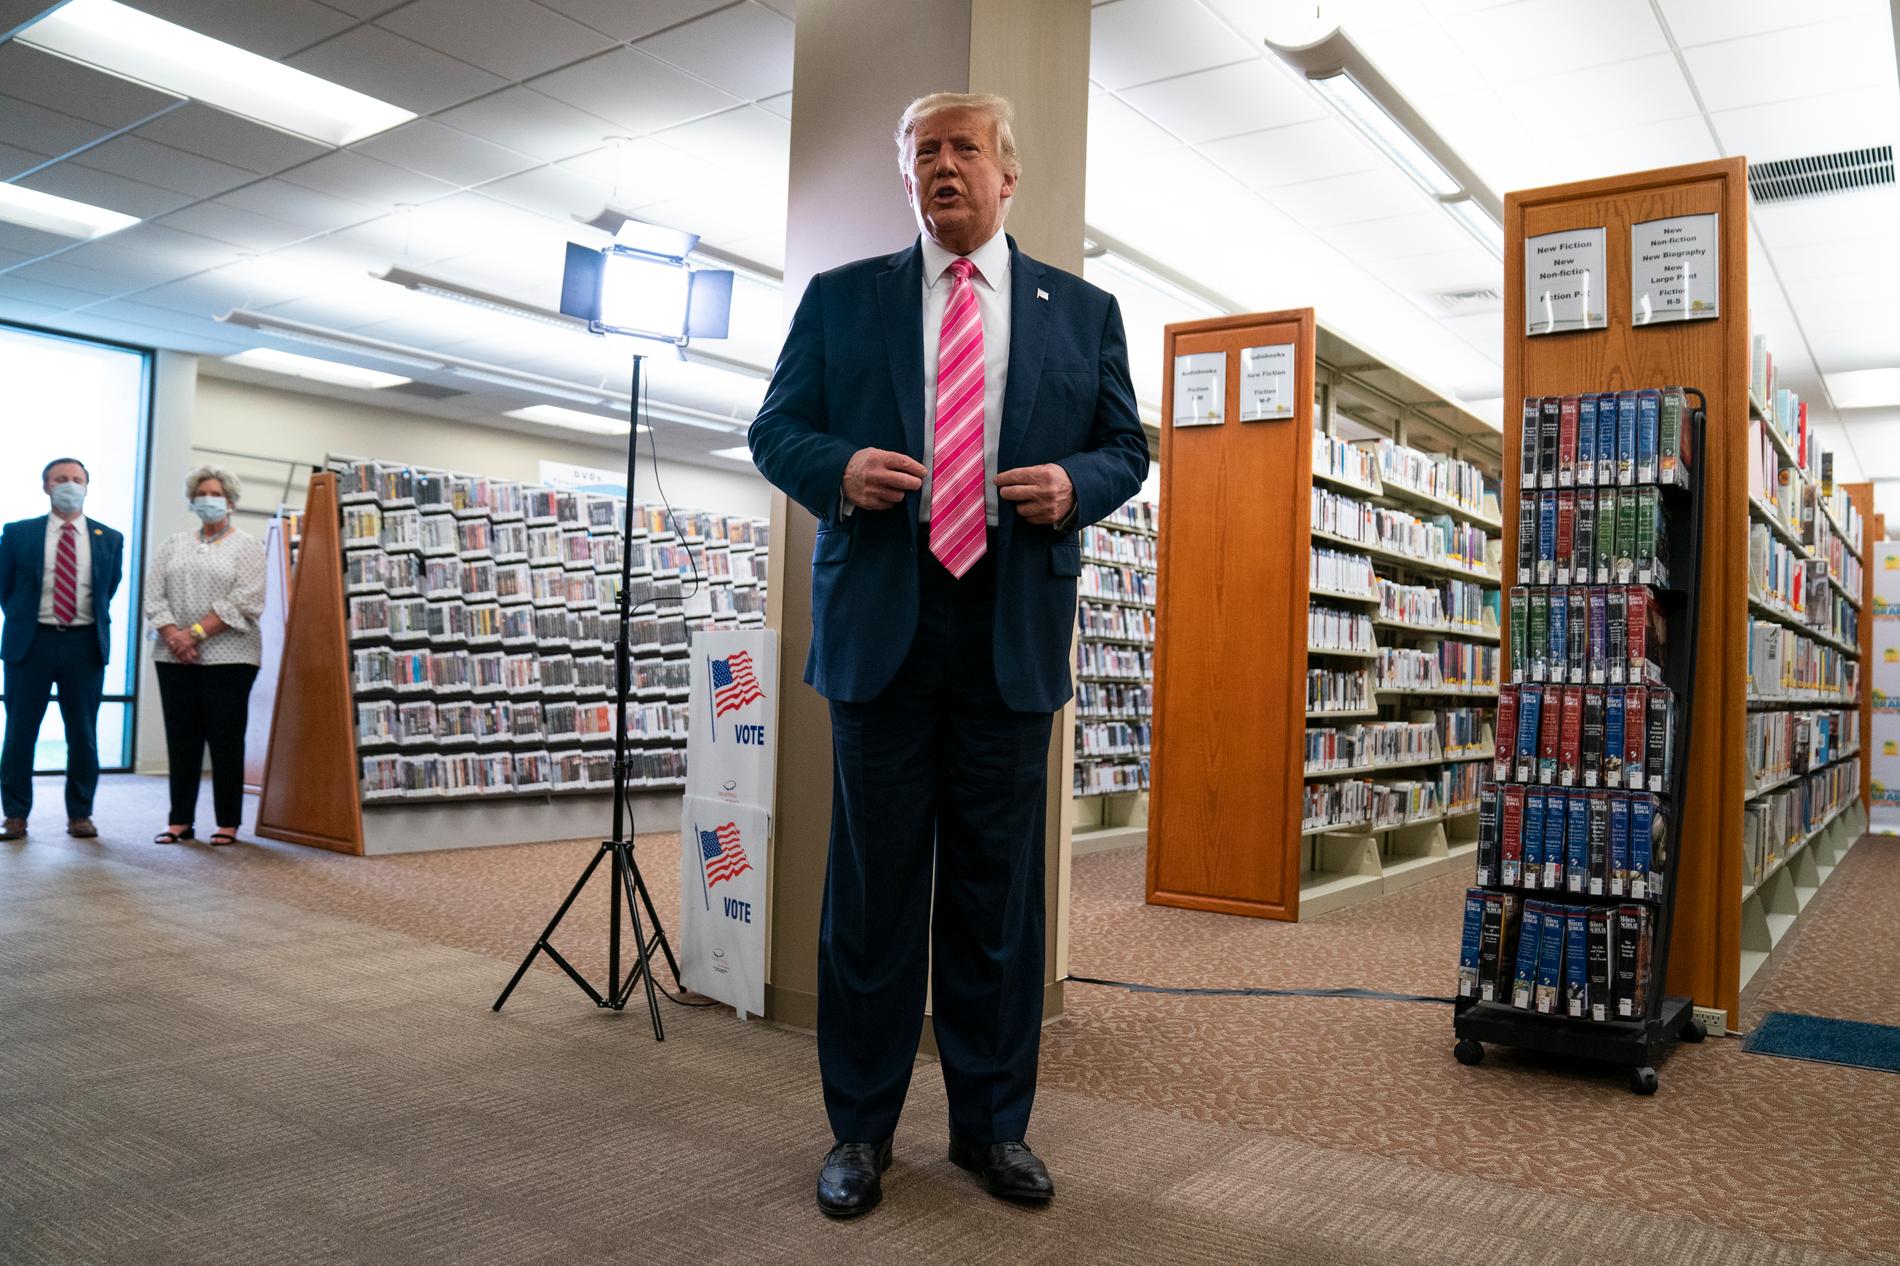 USA:s president Donald Trump pratar med journalister efter att han har avlagt sin förtidsröstt i ett bibliotek i West Palm Beach i Florida. Det amerikanska presidentvalet hålls den 3 november.